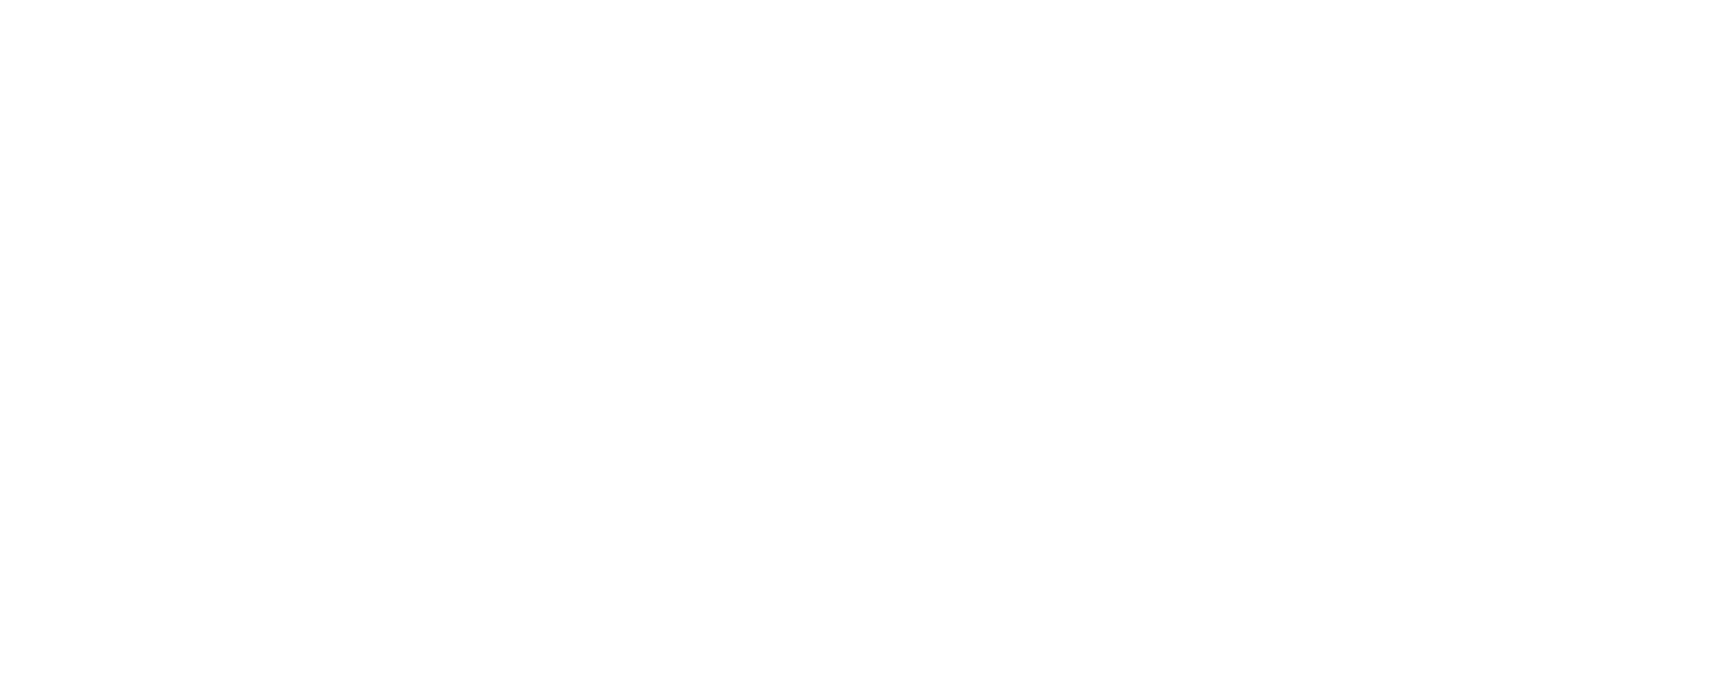 Your Pie Logo